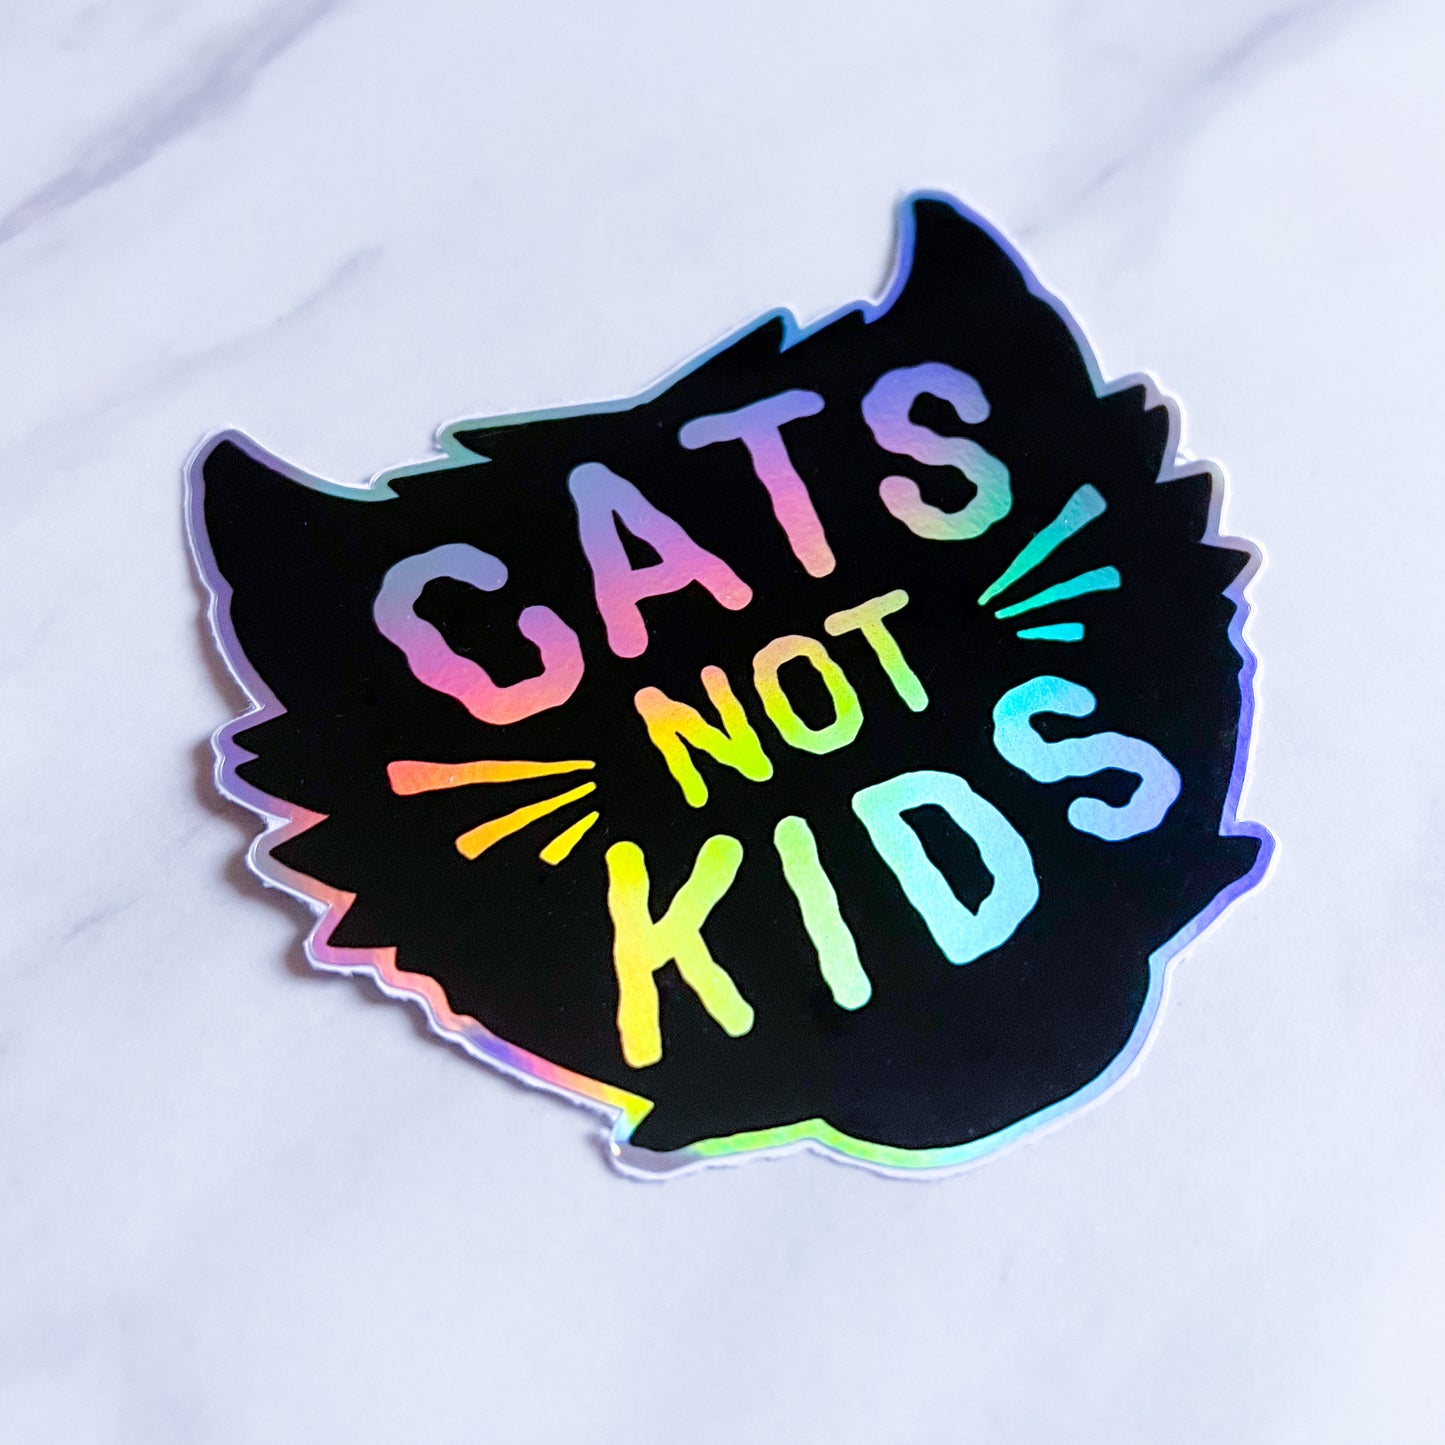 Cats Not Kids Sticker